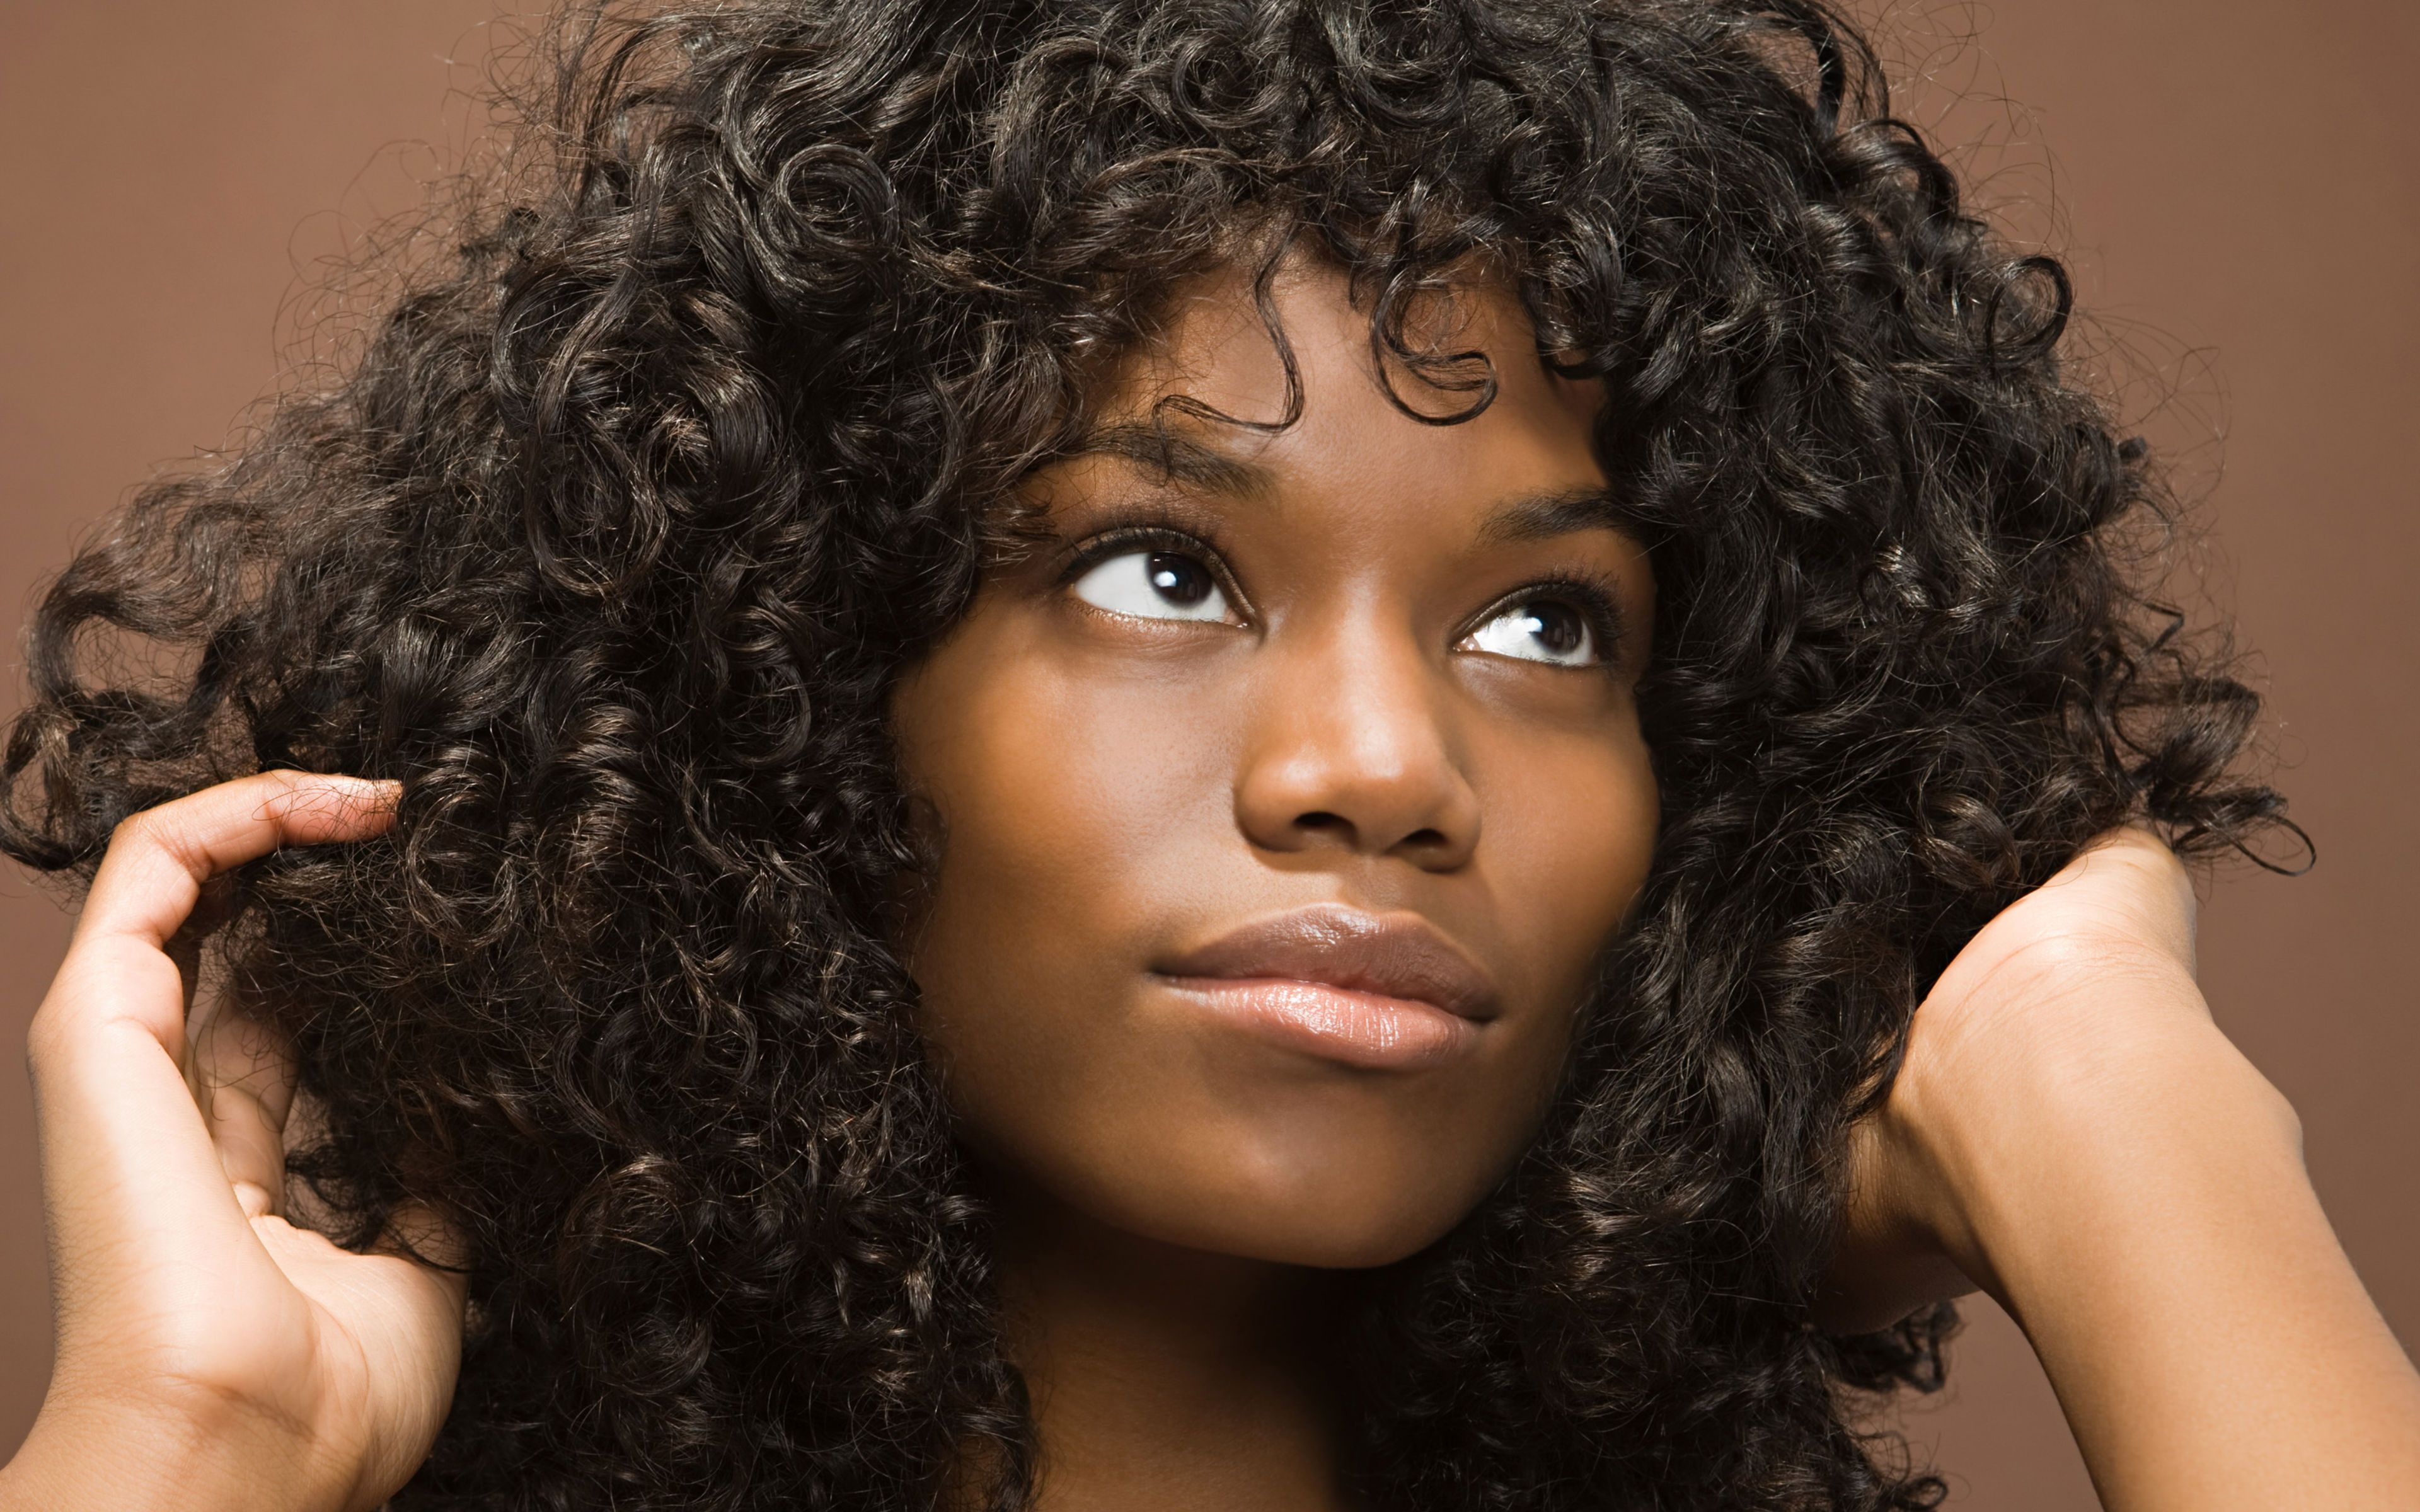 非洲女孩头发天生自然卷,要想拉直有多难?理发师直言受不了